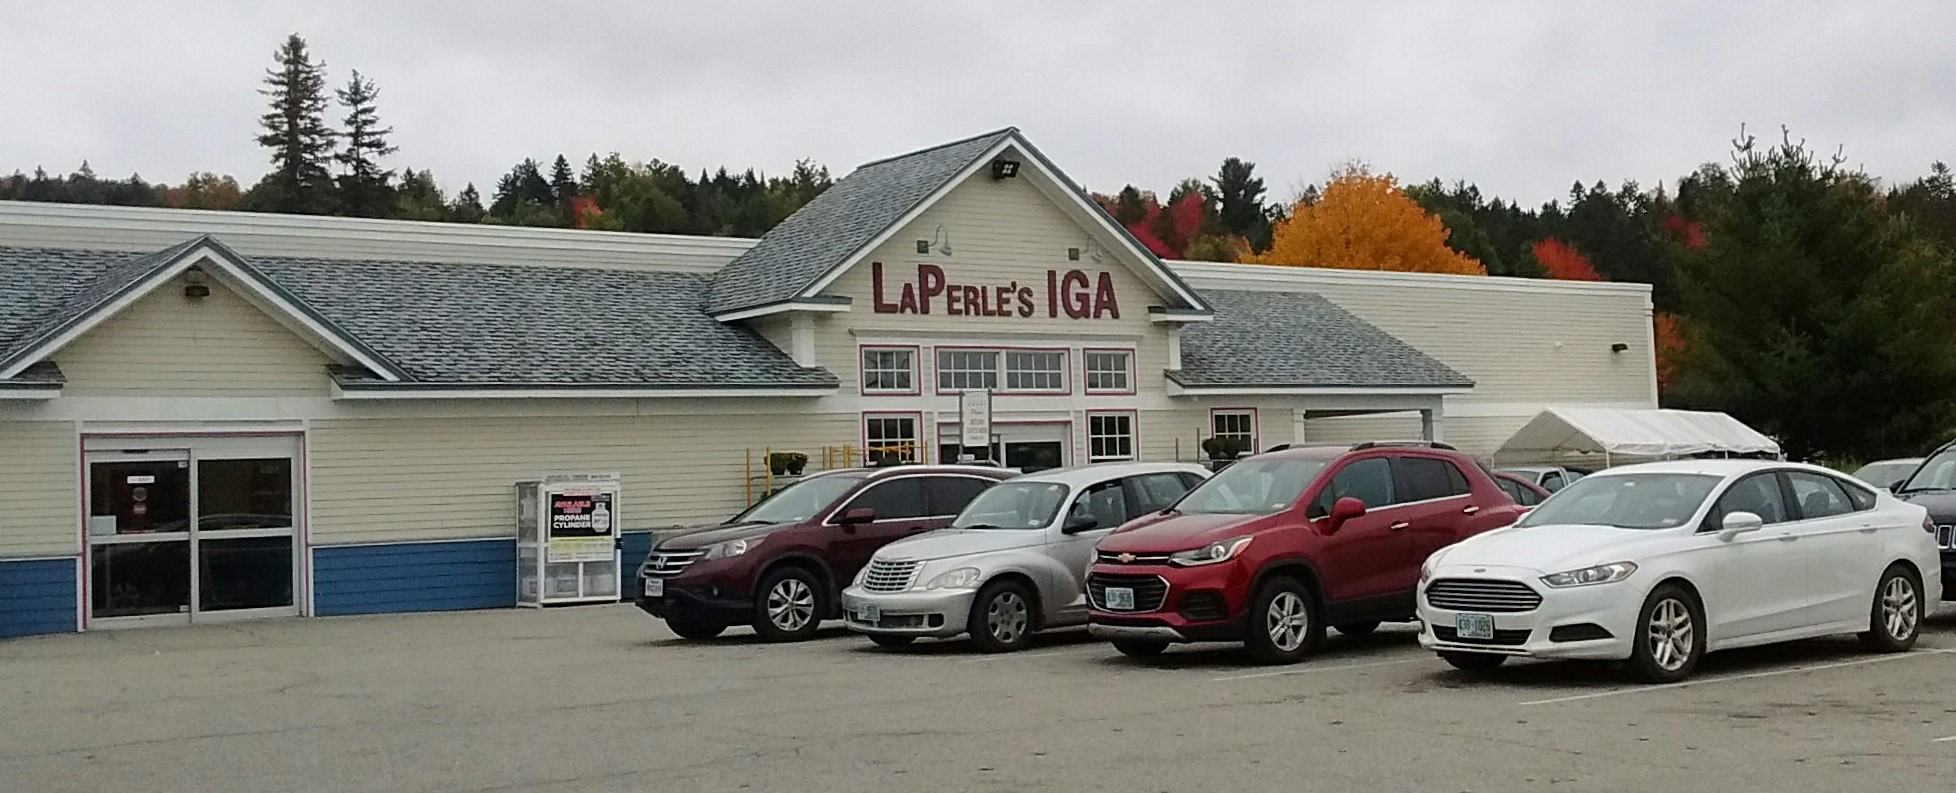 LaPerle's IGA